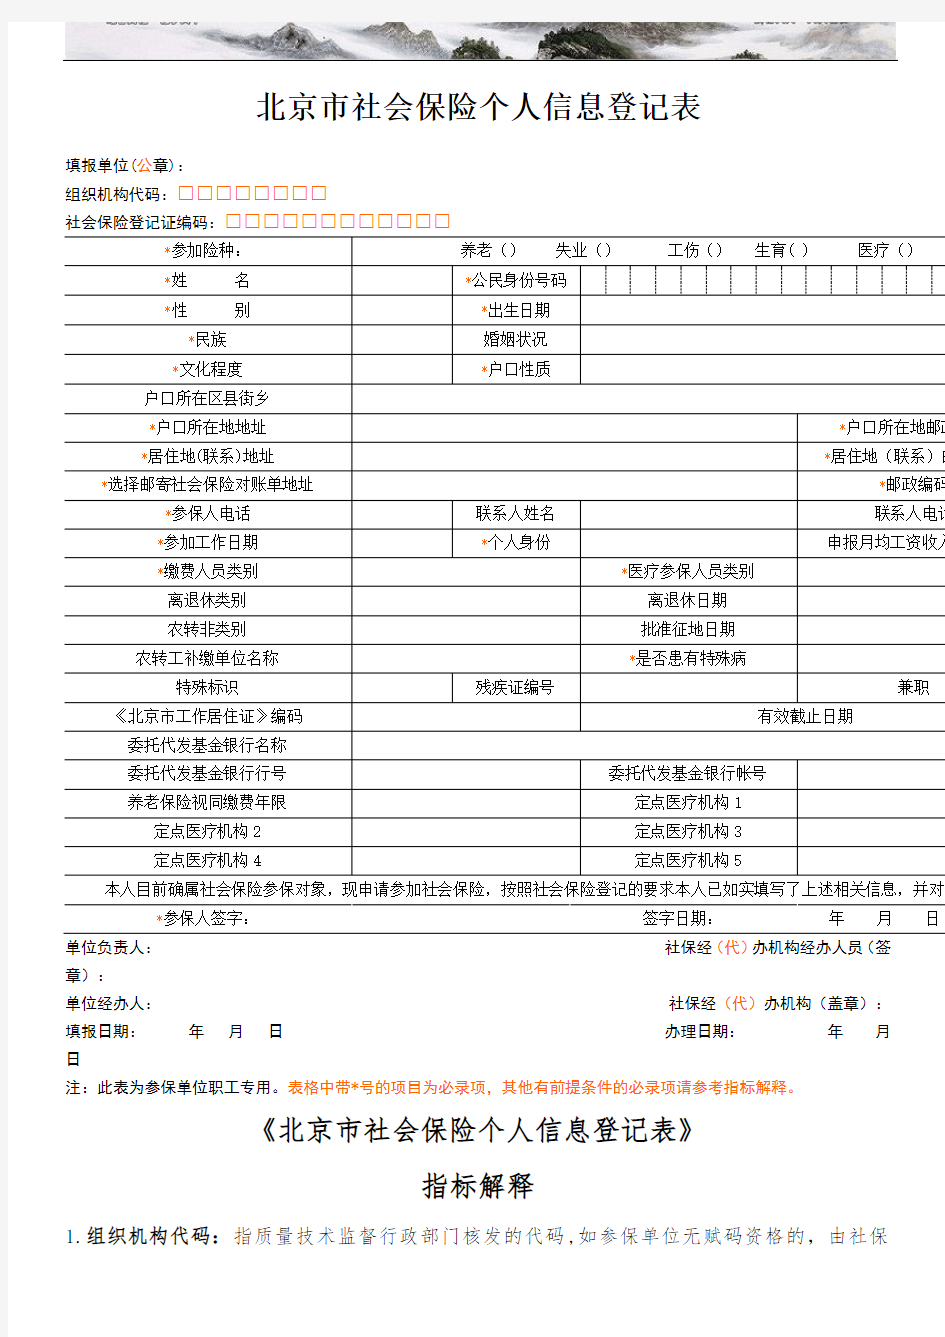 北京市社保个人信息登记表